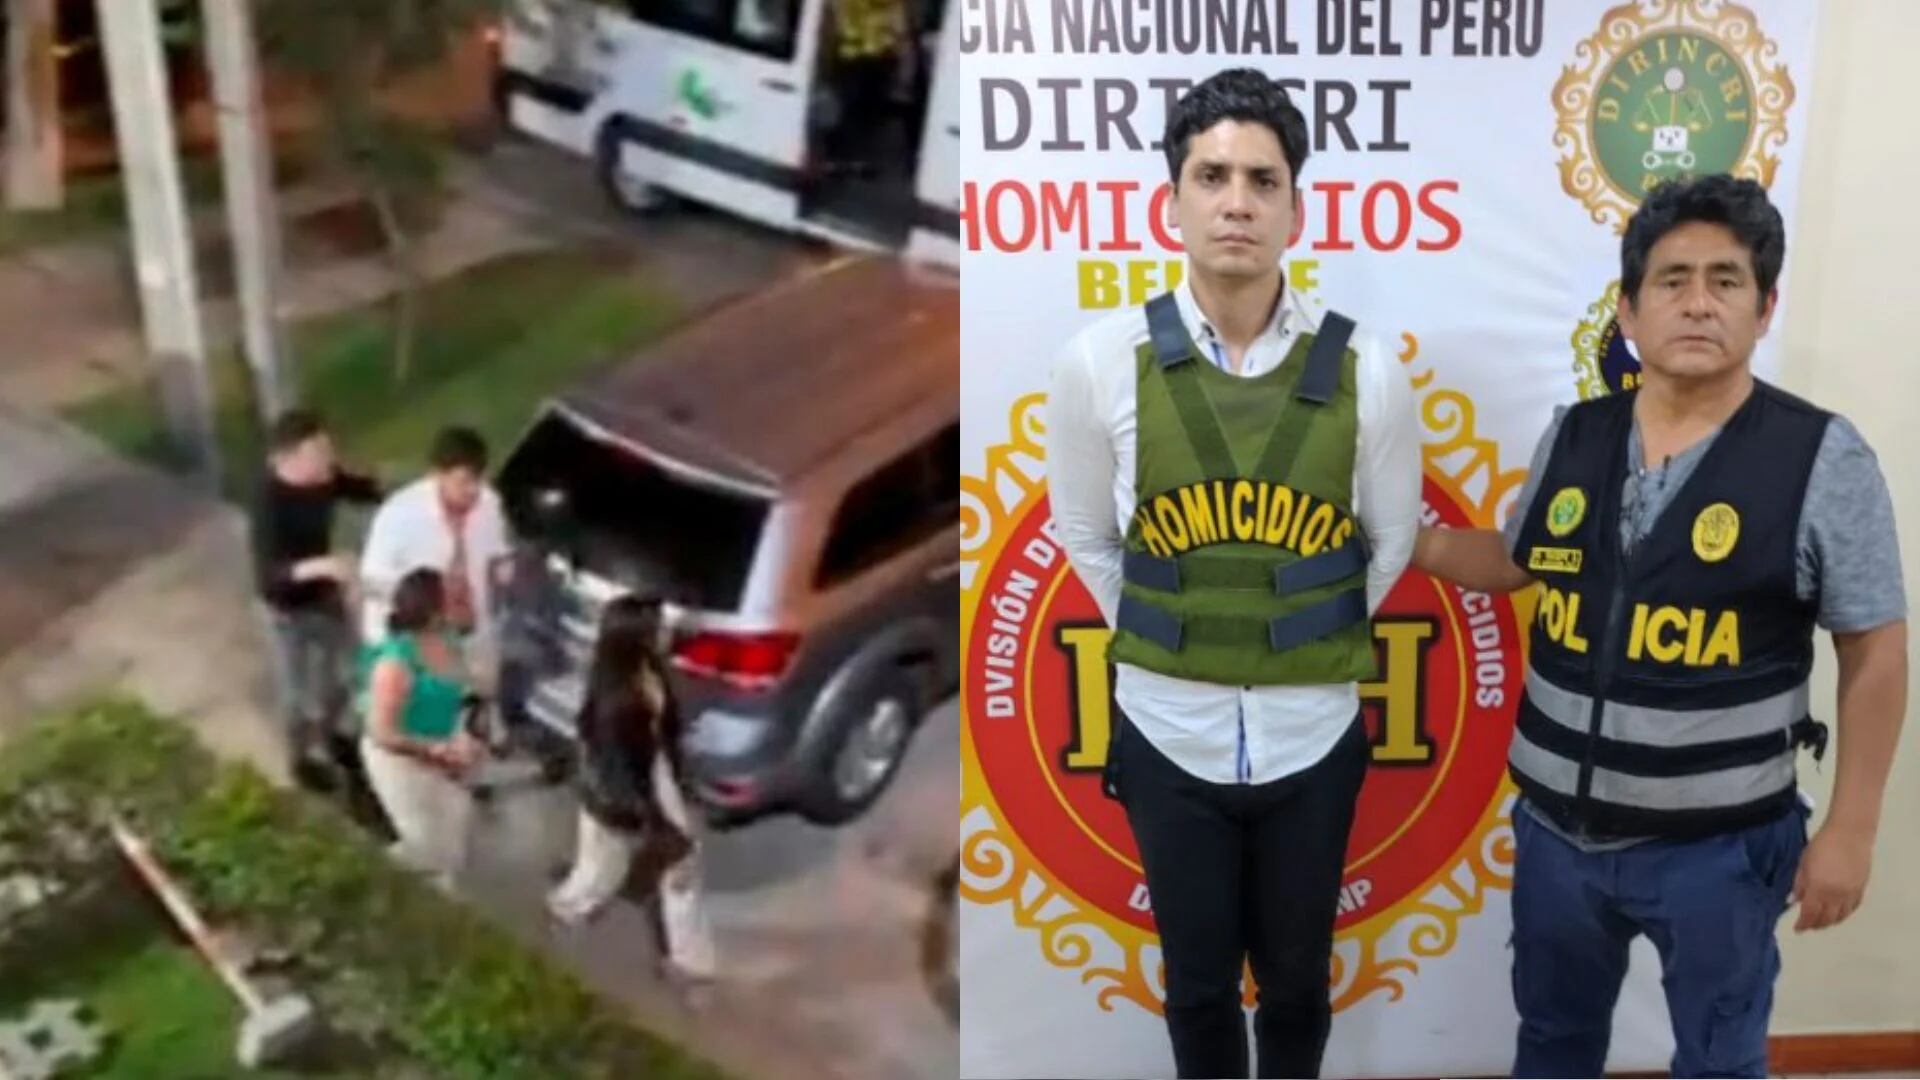 Denuncias y acusaciones contra hermanos Valdivia Montoya: Desde intento de violación hasta contratos fraudulentos con el Estado